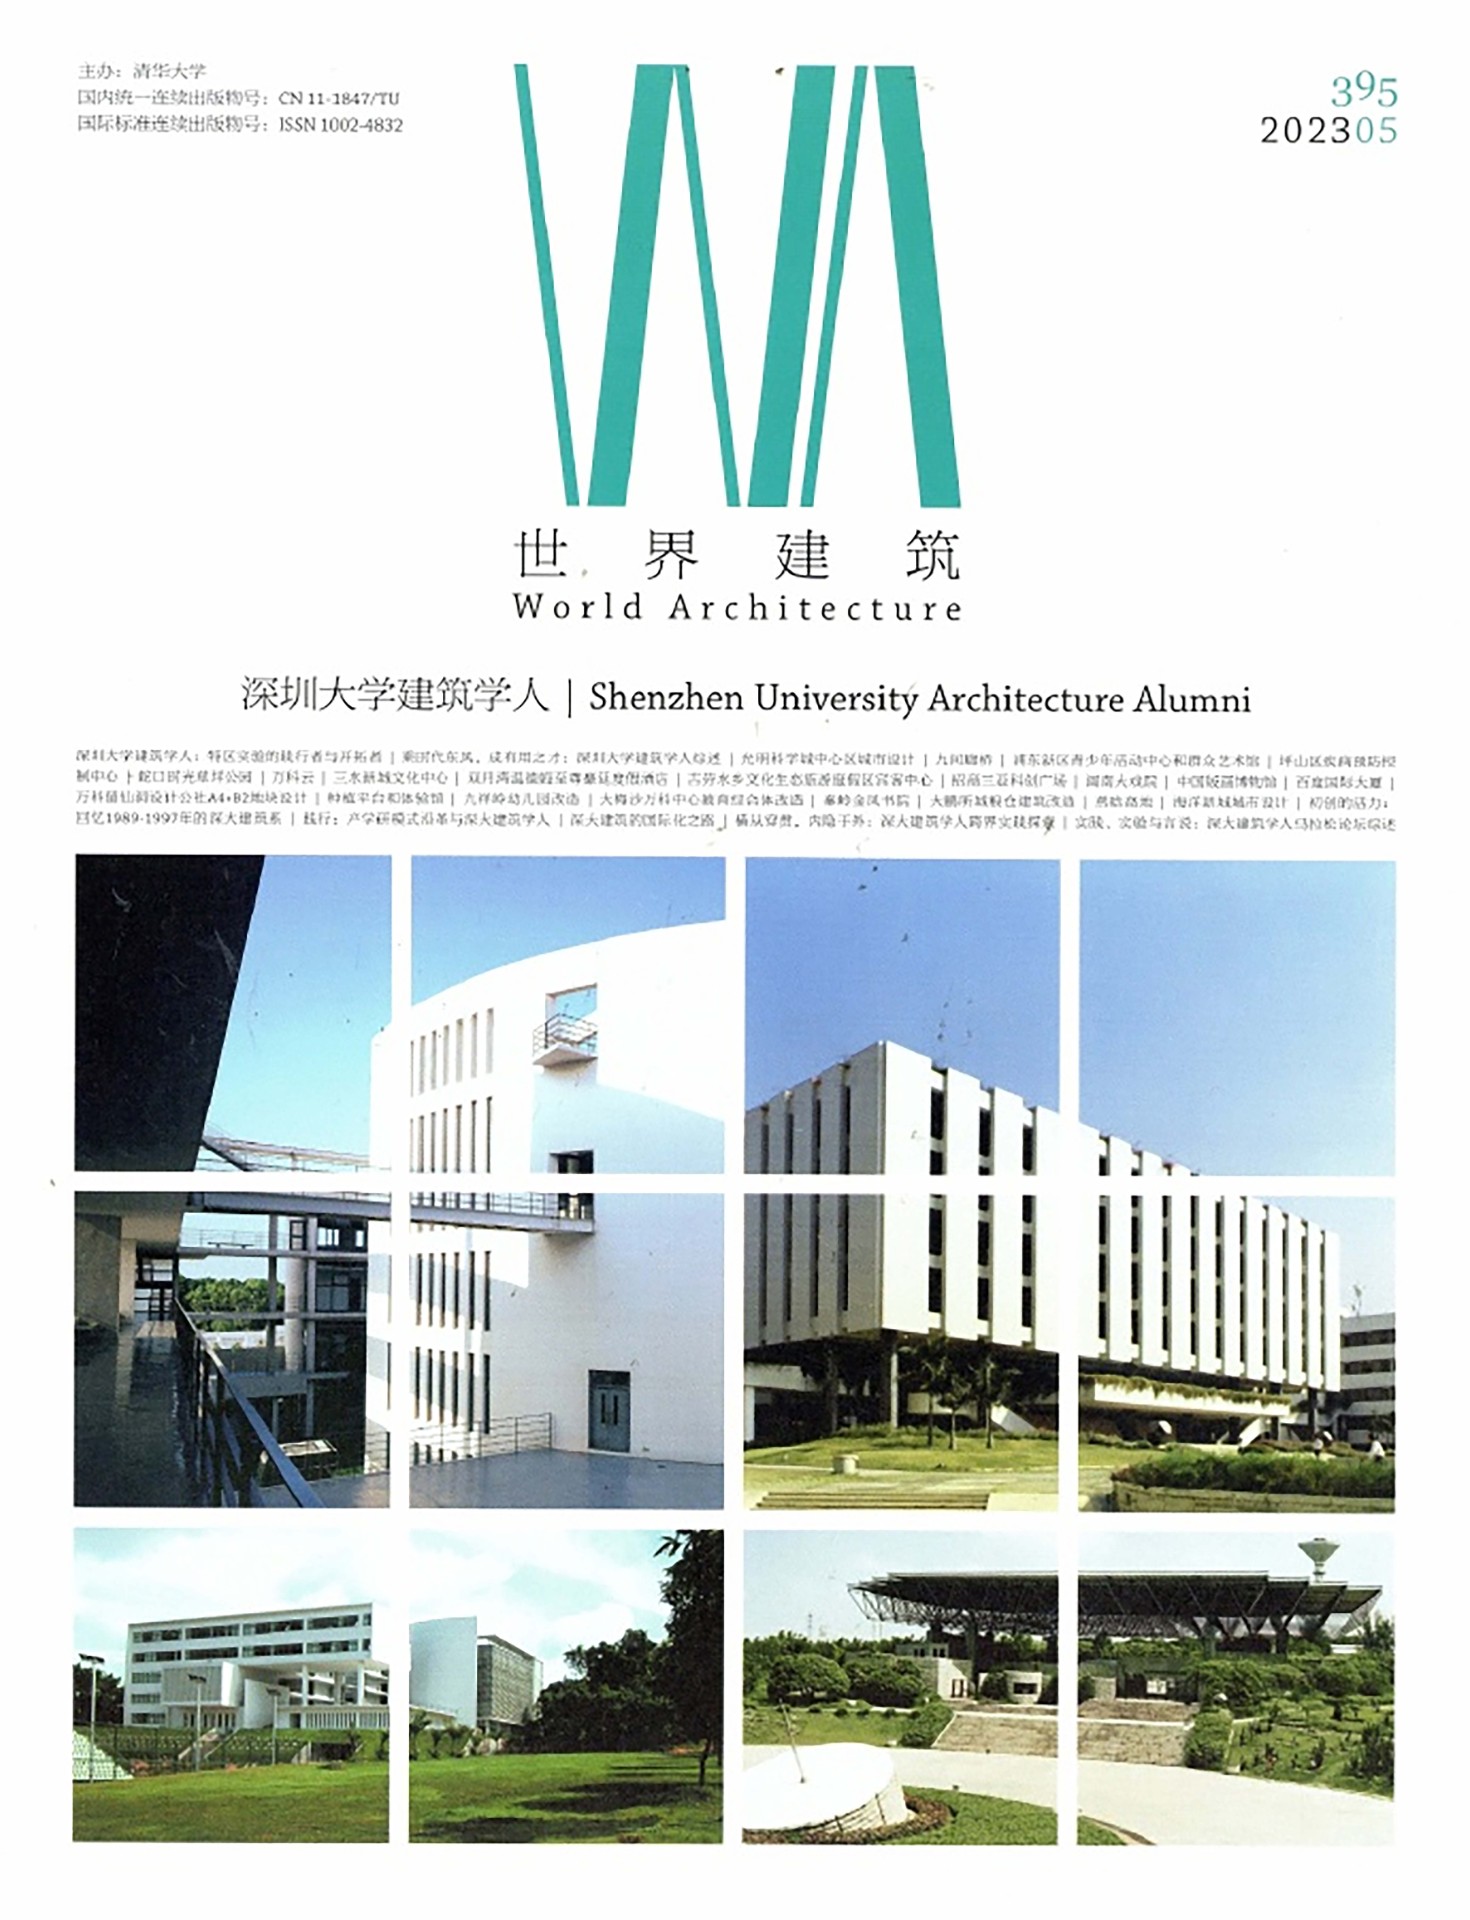 出版Publication  | 《世界建筑》World Architecture